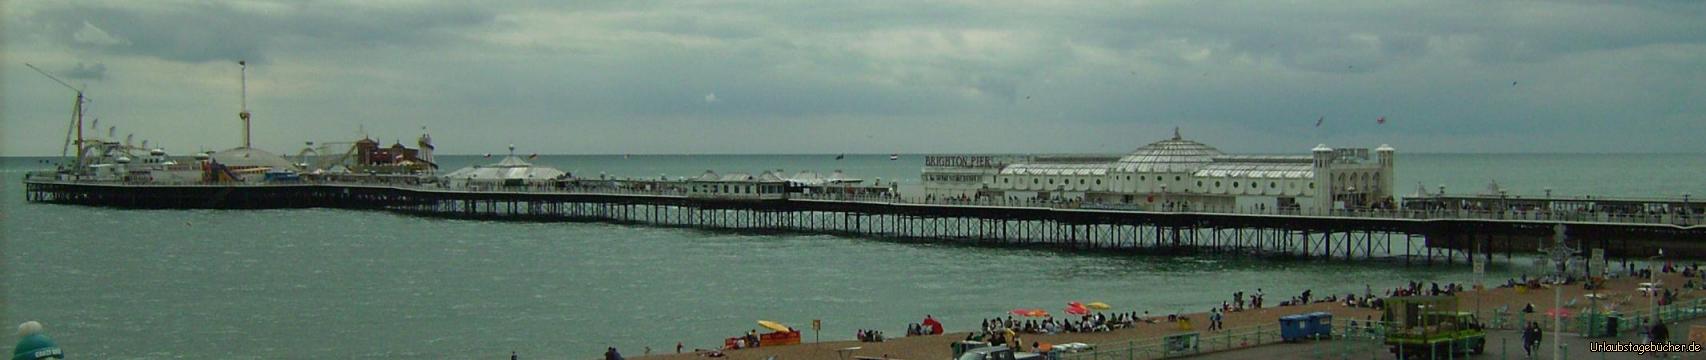 Seebrücke: das Brighton Pier, die weltberühmte Seebrücke von Brighton 